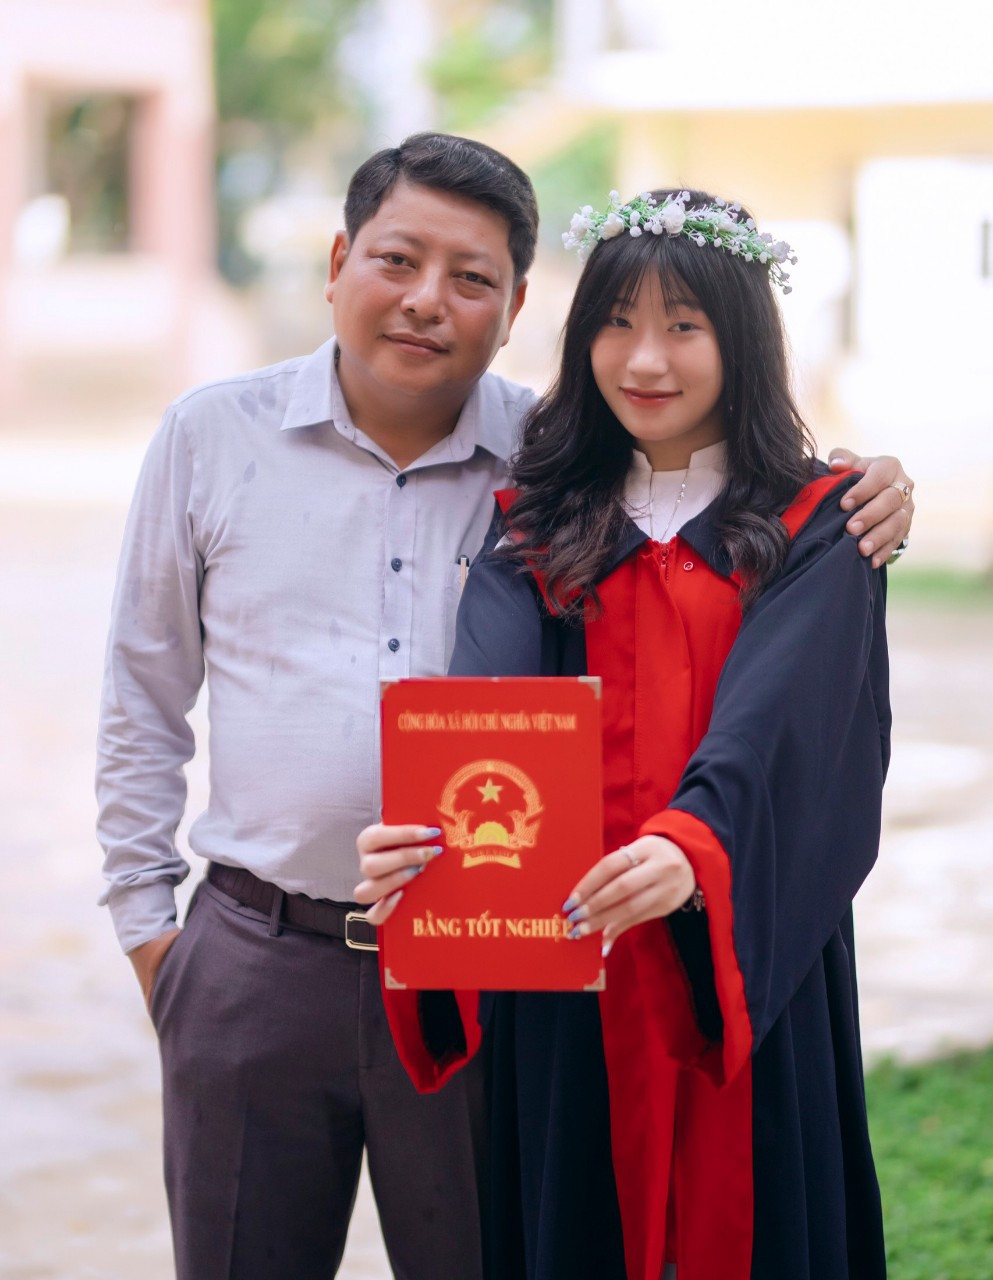 Em Lý Thùy Nhung chụp ảnh cùng bố của mình trong buổi tổng kết cuối năm học lớp 12 (Ảnh: NVCC).